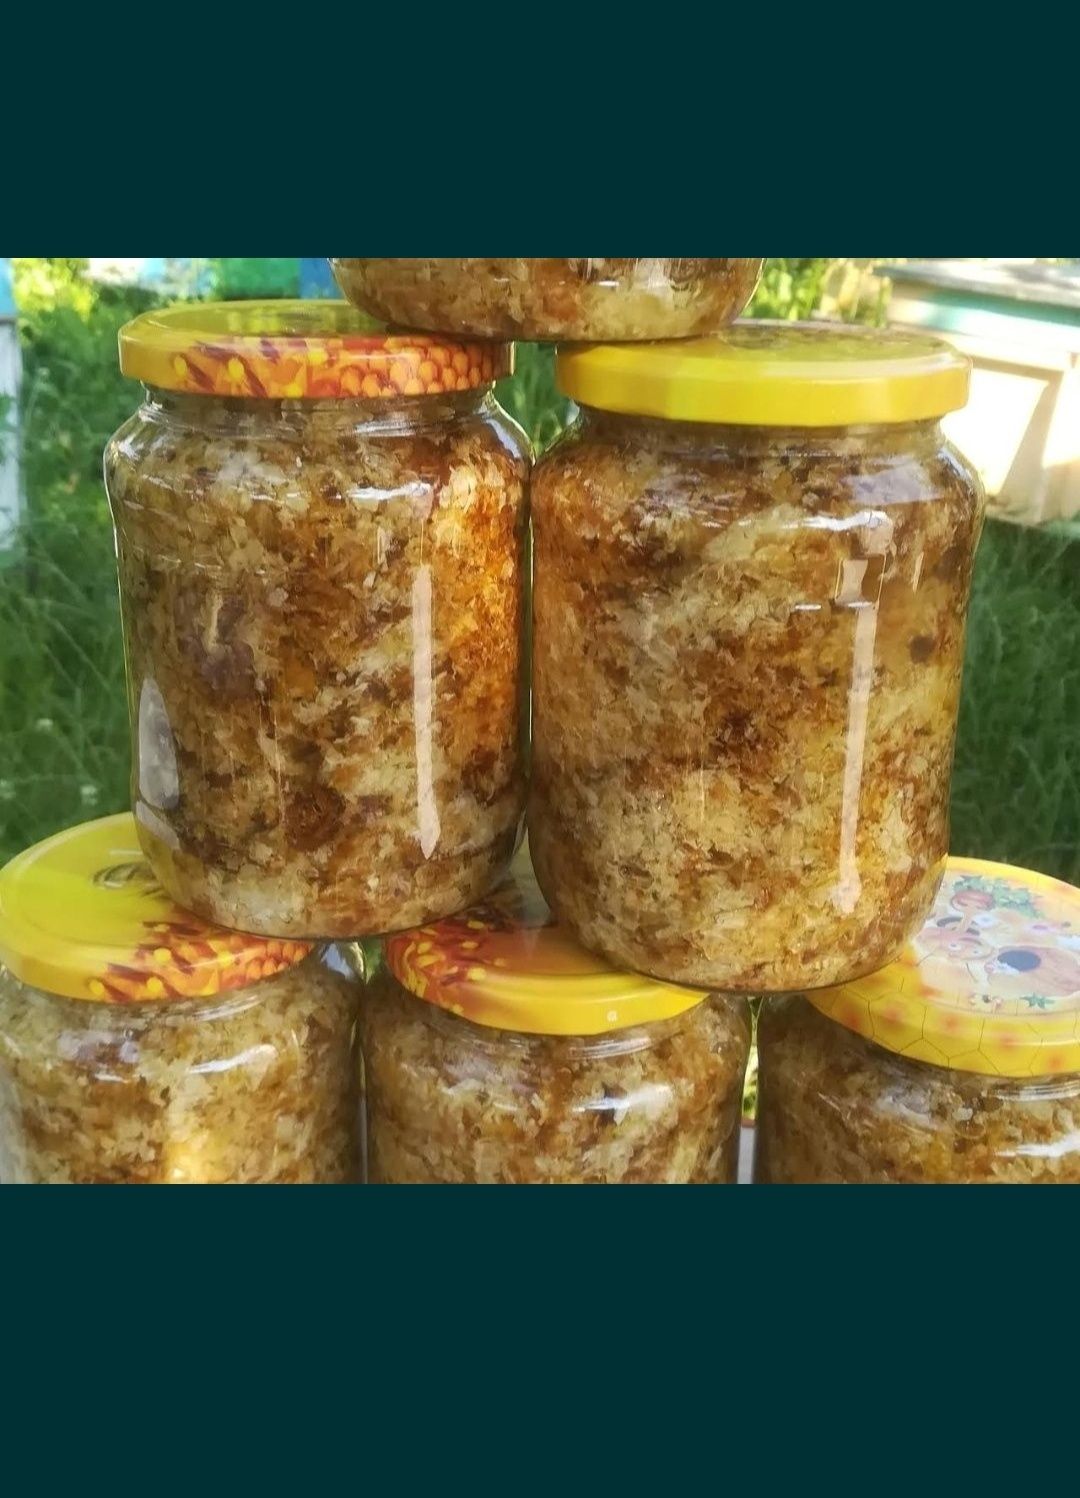 Produse apicole 100% naturale